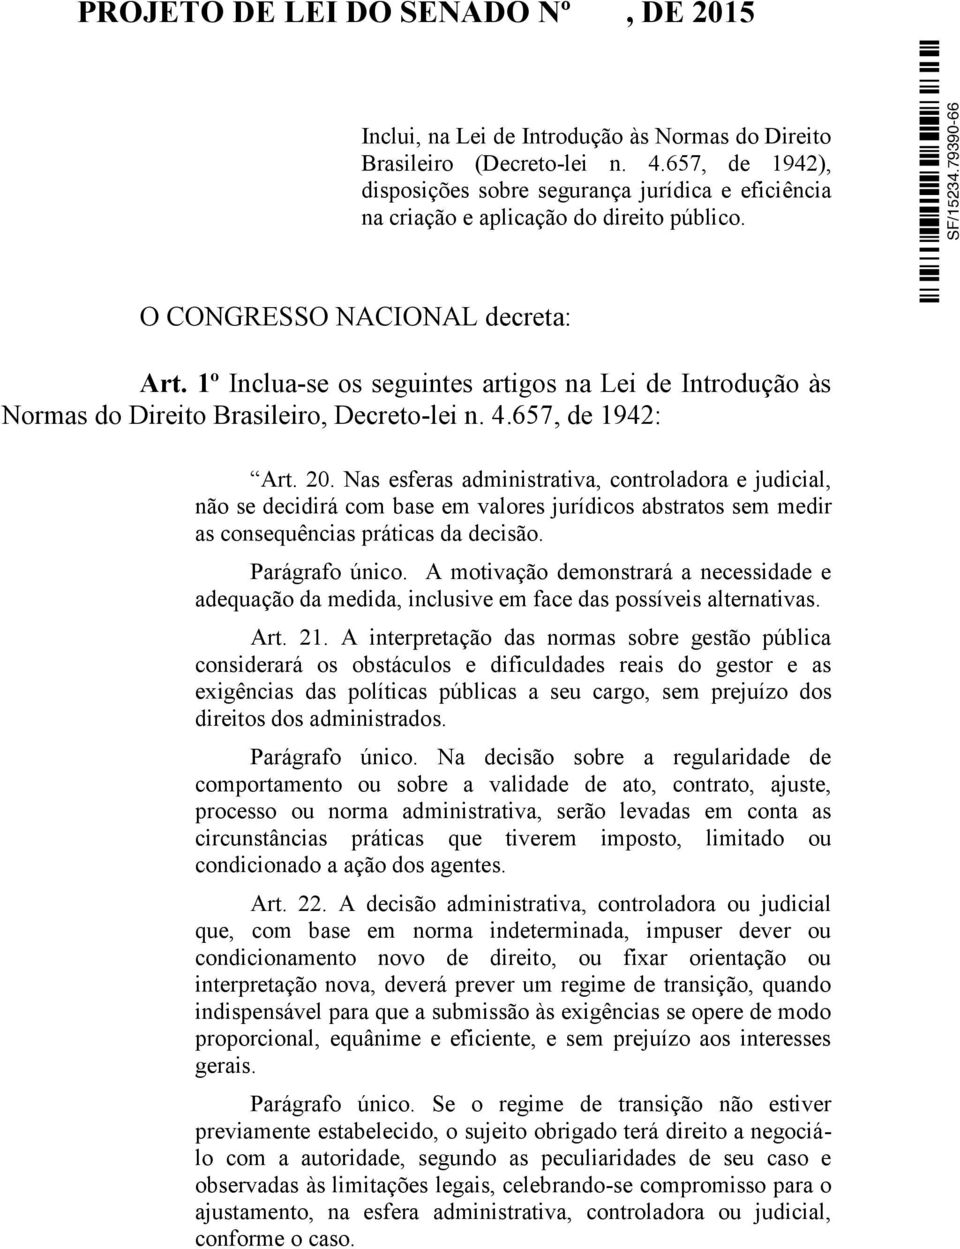 1º Inclua-se os seguintes artigos na Lei de Introdução às Normas do Direito Brasileiro, Decreto-lei n. 4.657, de 1942: Art. 20.